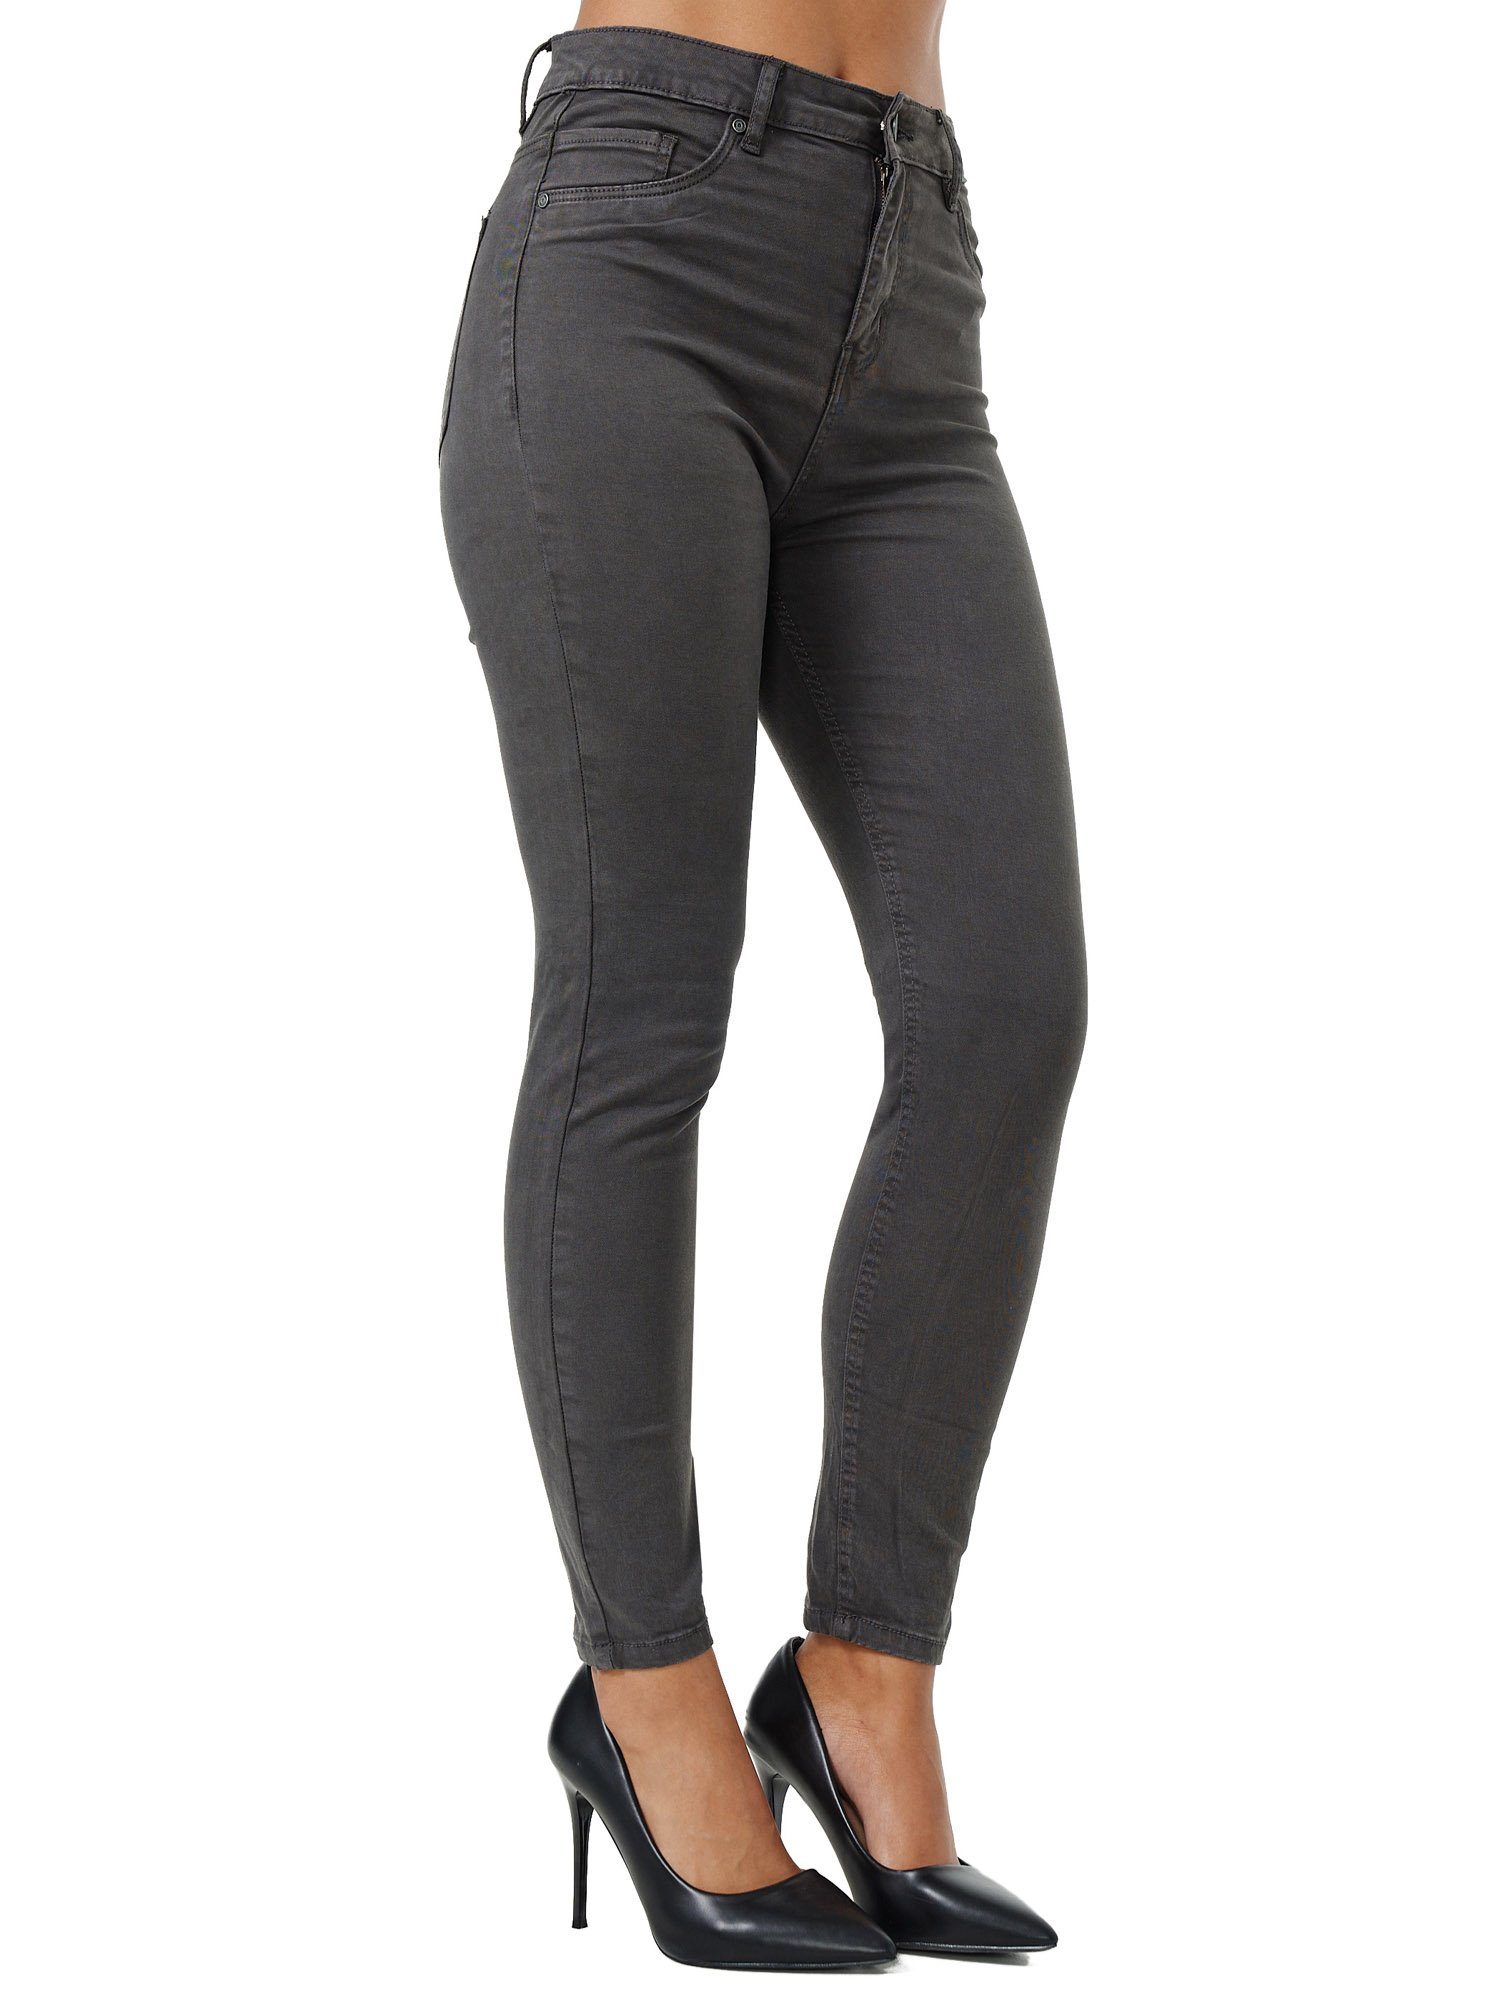 Tazzio Skinny-fit-Jeans Rise Damen anthrazit Jeanshose High F103